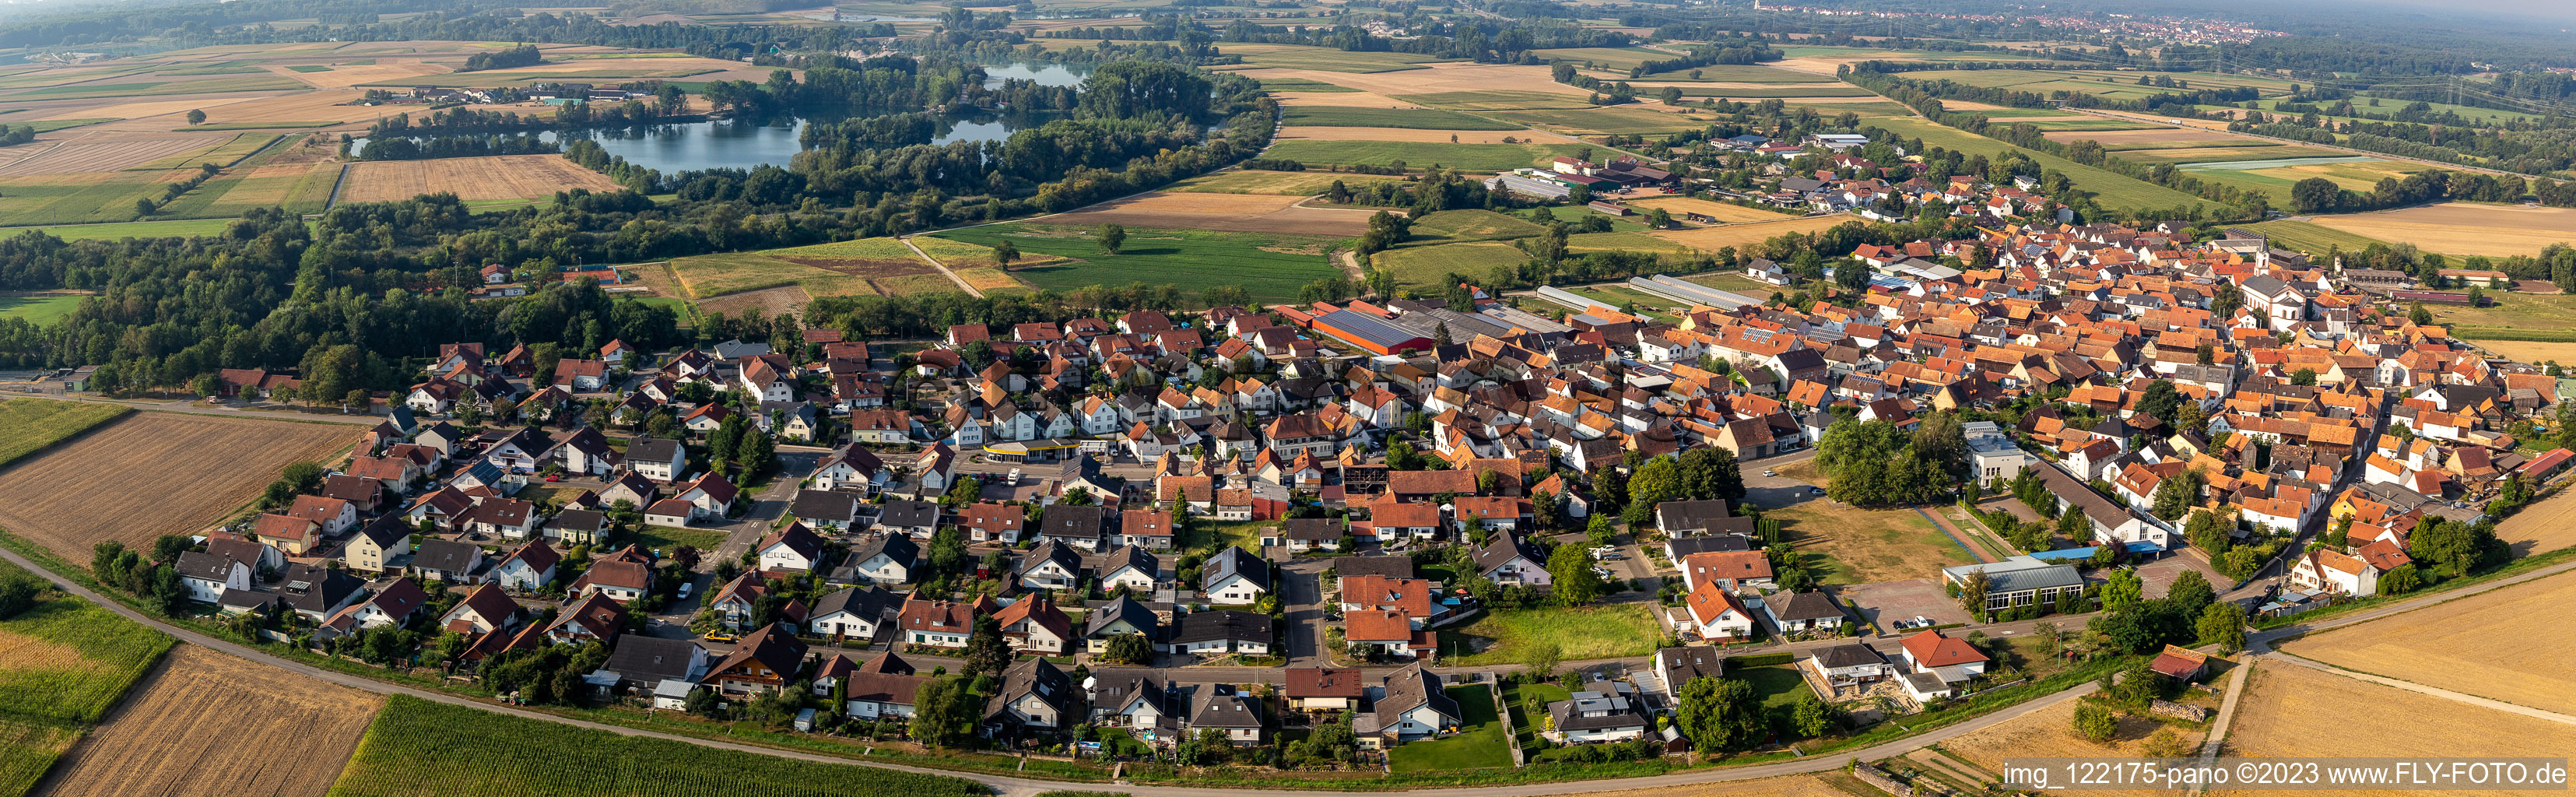 Panorama in Neupotz im Bundesland Rheinland-Pfalz, Deutschland